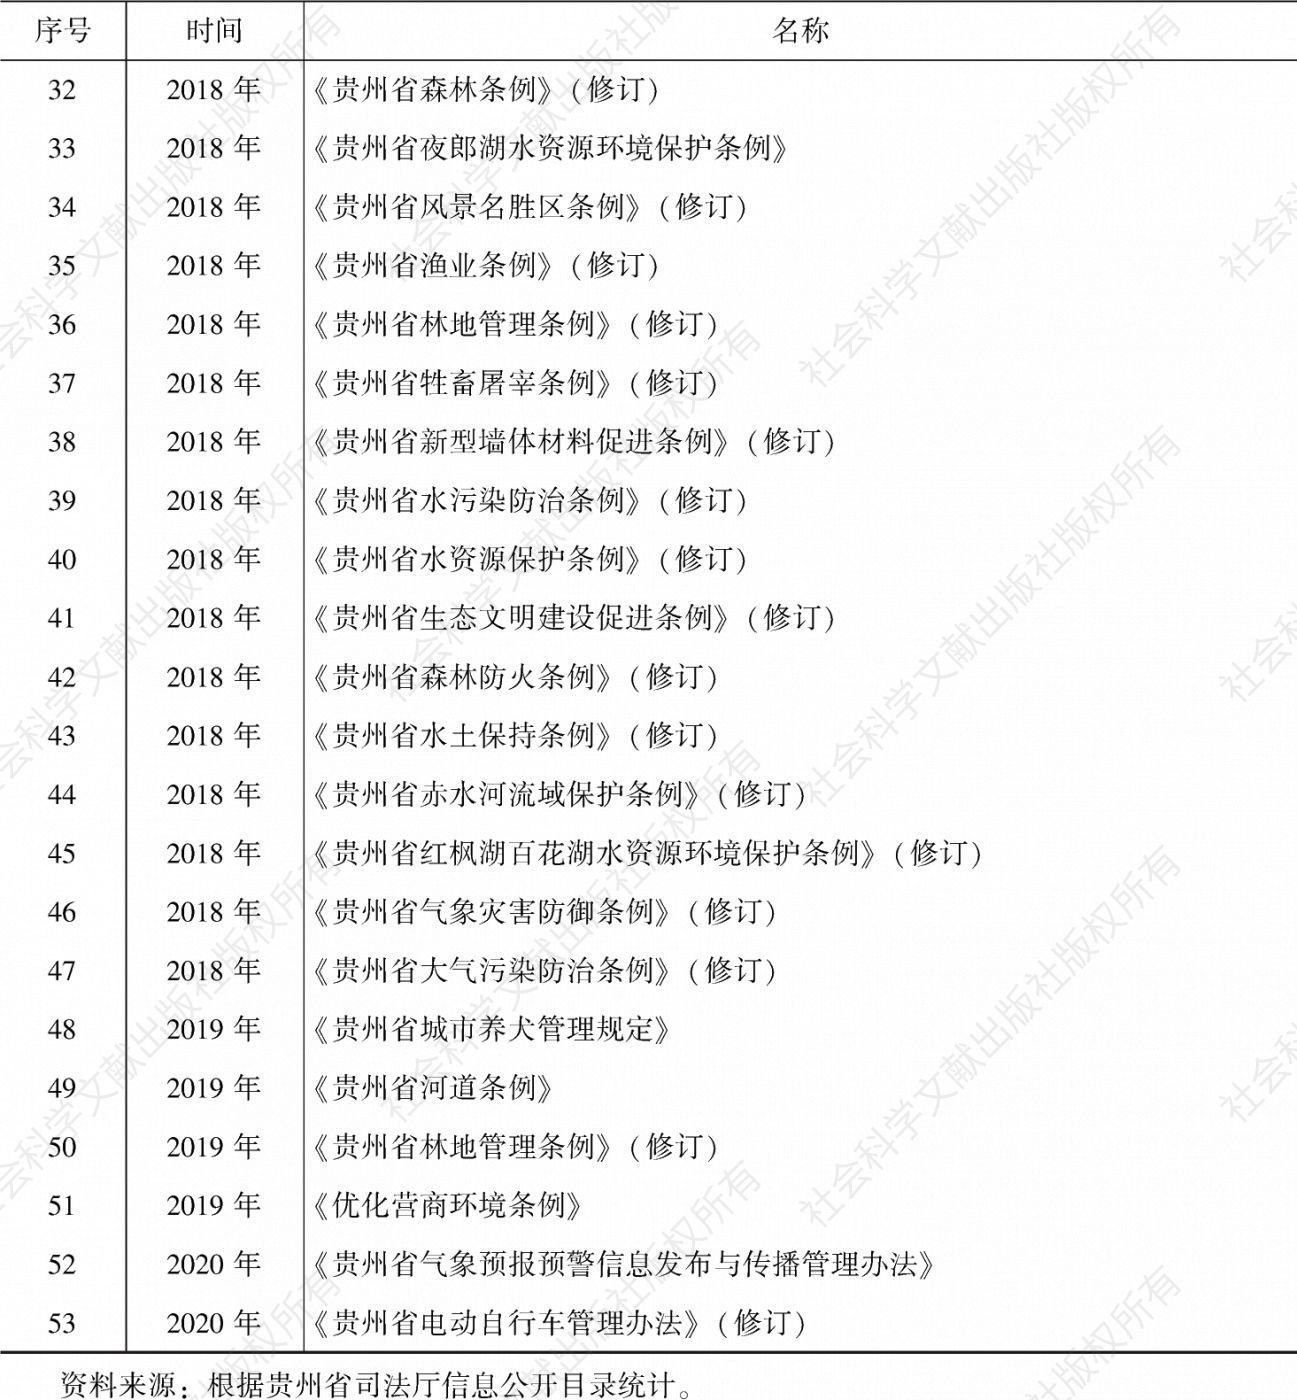 表6-2 2017年以来贵州省出台的生态文明建设相关法规一览-续表